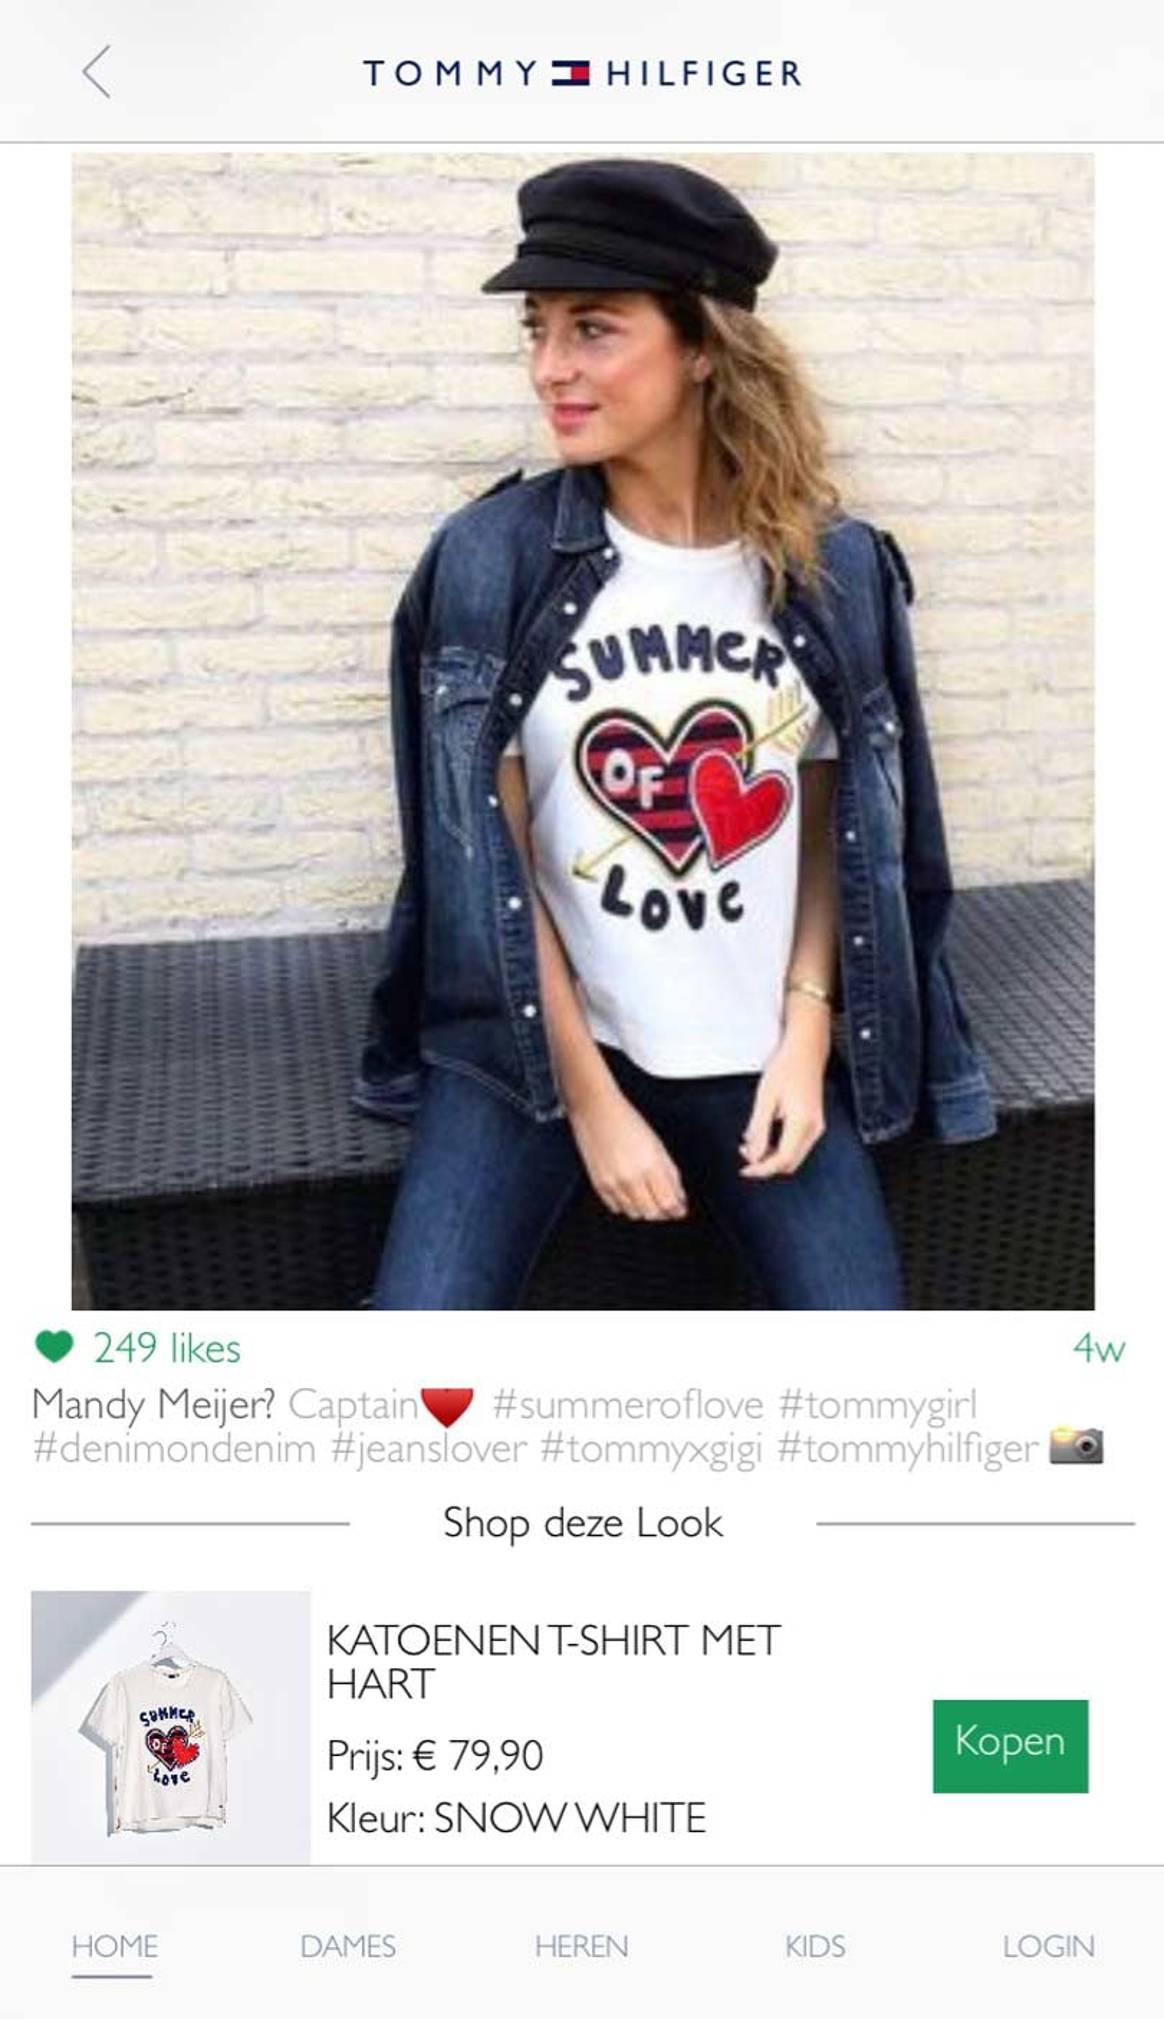 Tommy Hilfiger lanceert nieuwe app met shoppable Instagram-foto’s